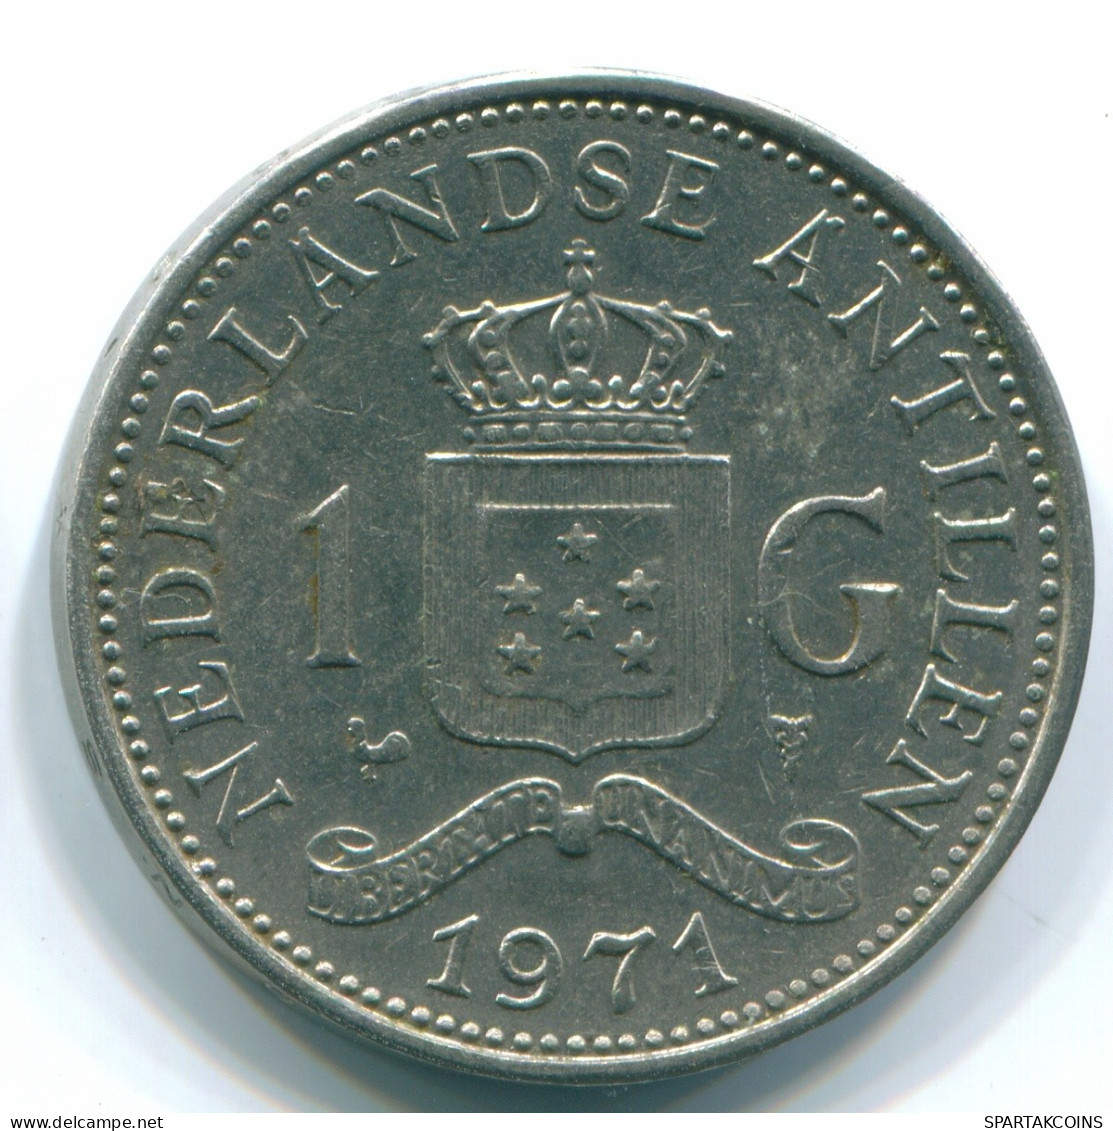 1 GULDEN 1971 NIEDERLÄNDISCHE ANTILLEN Nickel Koloniale Münze #S12009.D.A - Nederlandse Antillen